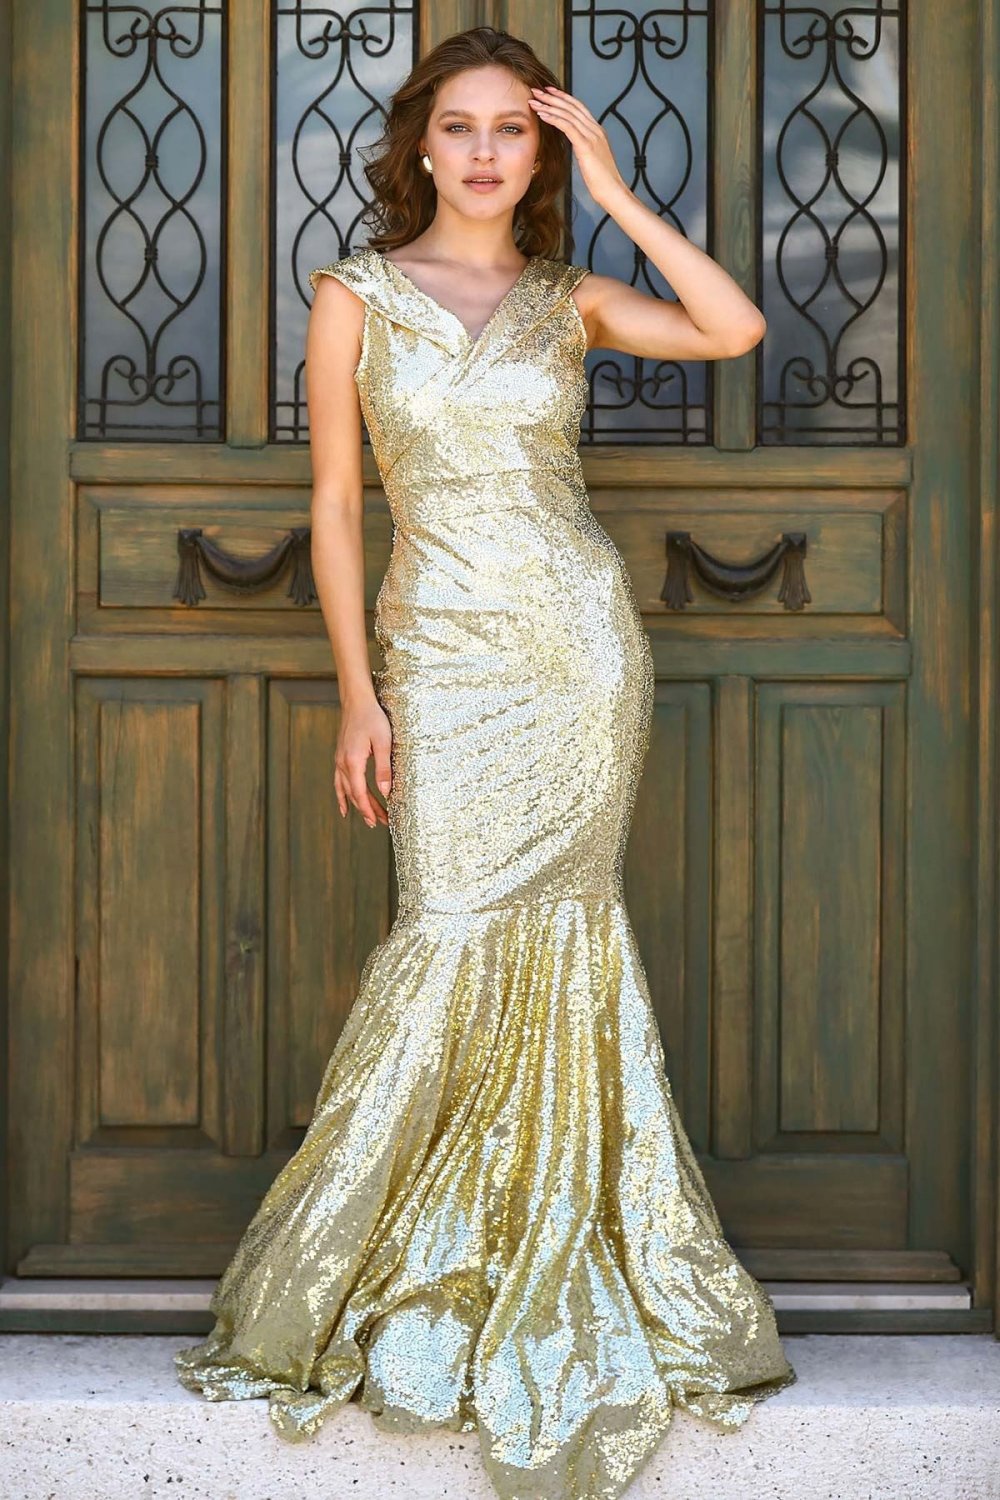 Pullu Altın Balık Model Uzun Abiye Elbise